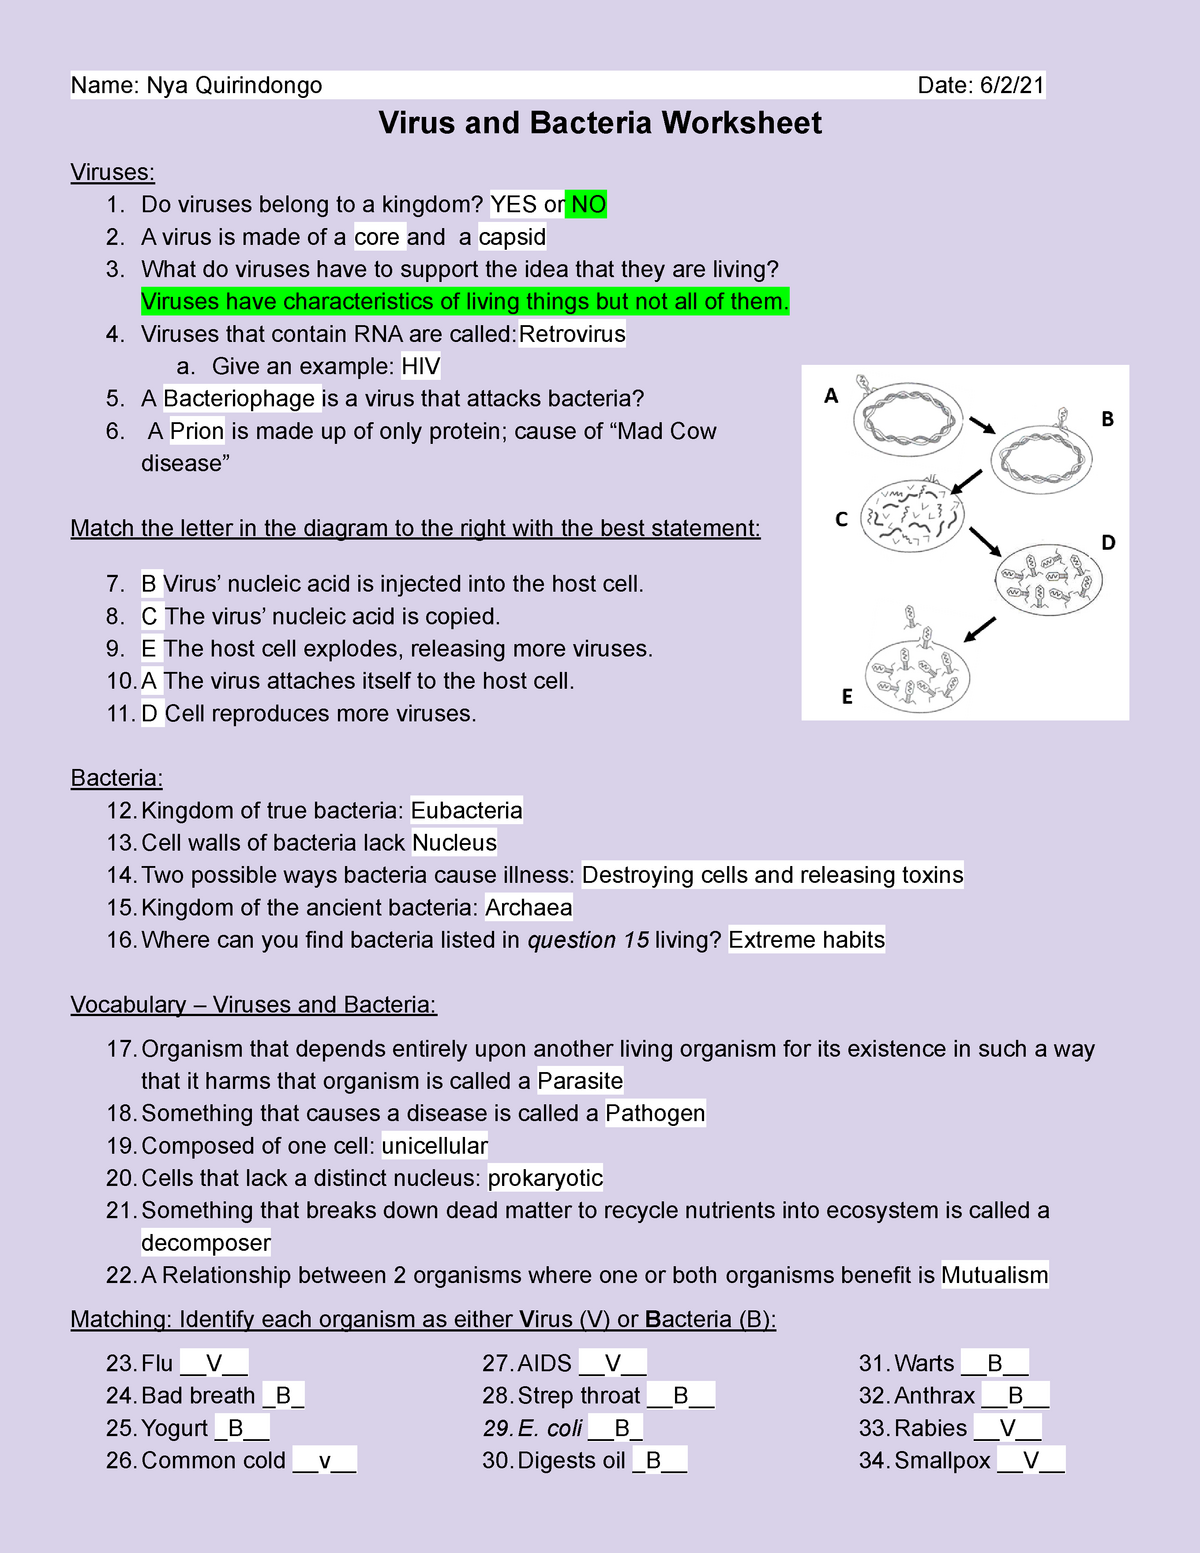 Copy of Virus and Bacteria Worksheet - BIO21 - General Biology In Prokaryotes Bacteria Worksheet Answers